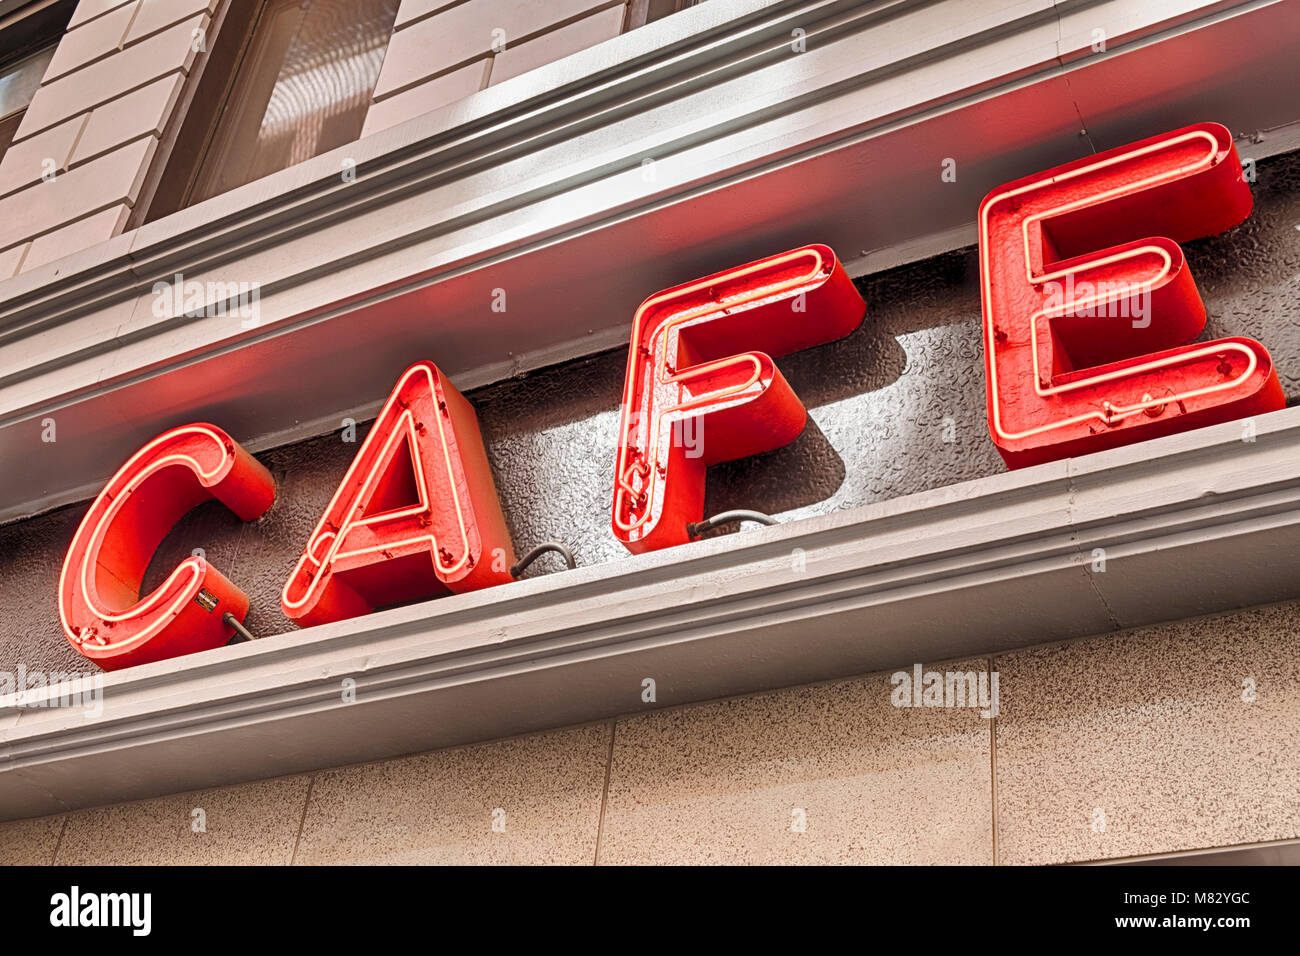 Eine helle rote Leuchtreklame Werbung ein Cafe leuchtet auf der Wand über  ein Restaurant in New York City Stockfotografie - Alamy